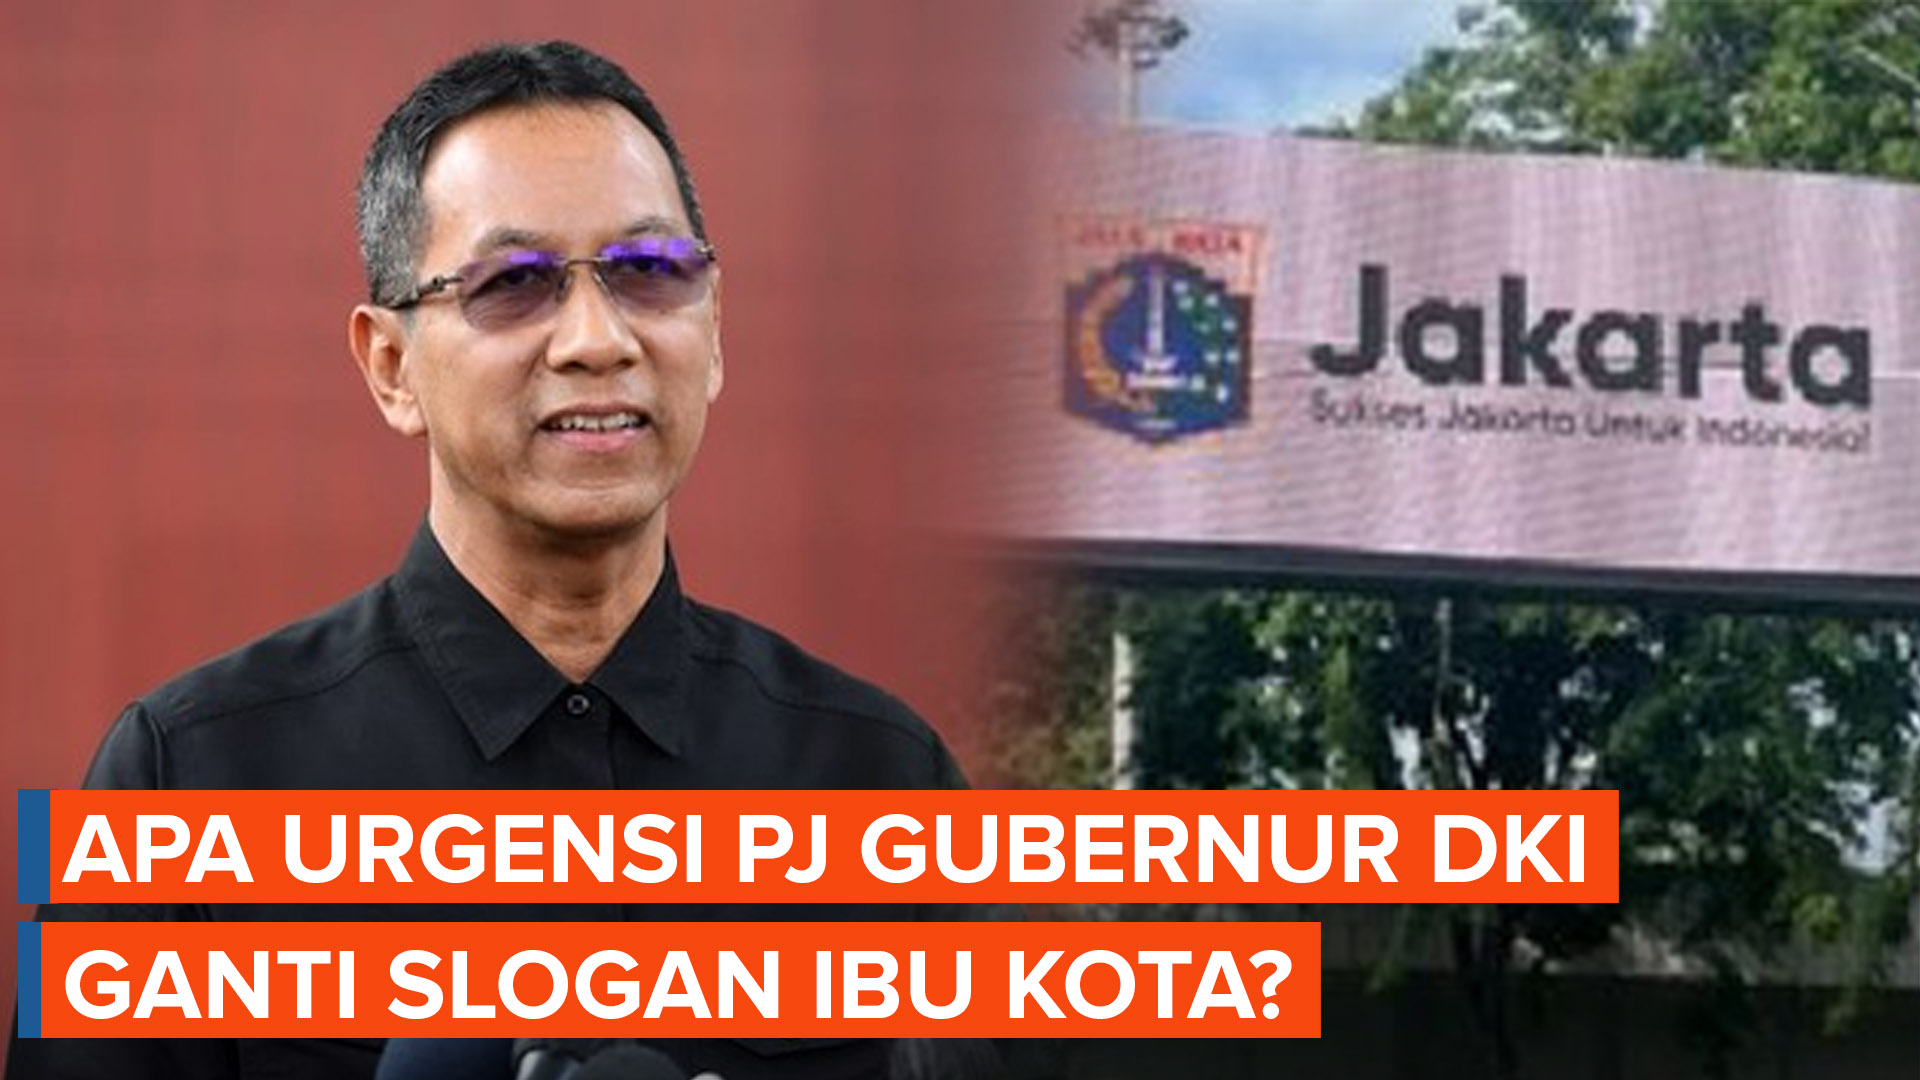 Pro Kontra Pj Gubernur DKI Ganti Slogan Ibu Kota Era Anies Baswedan